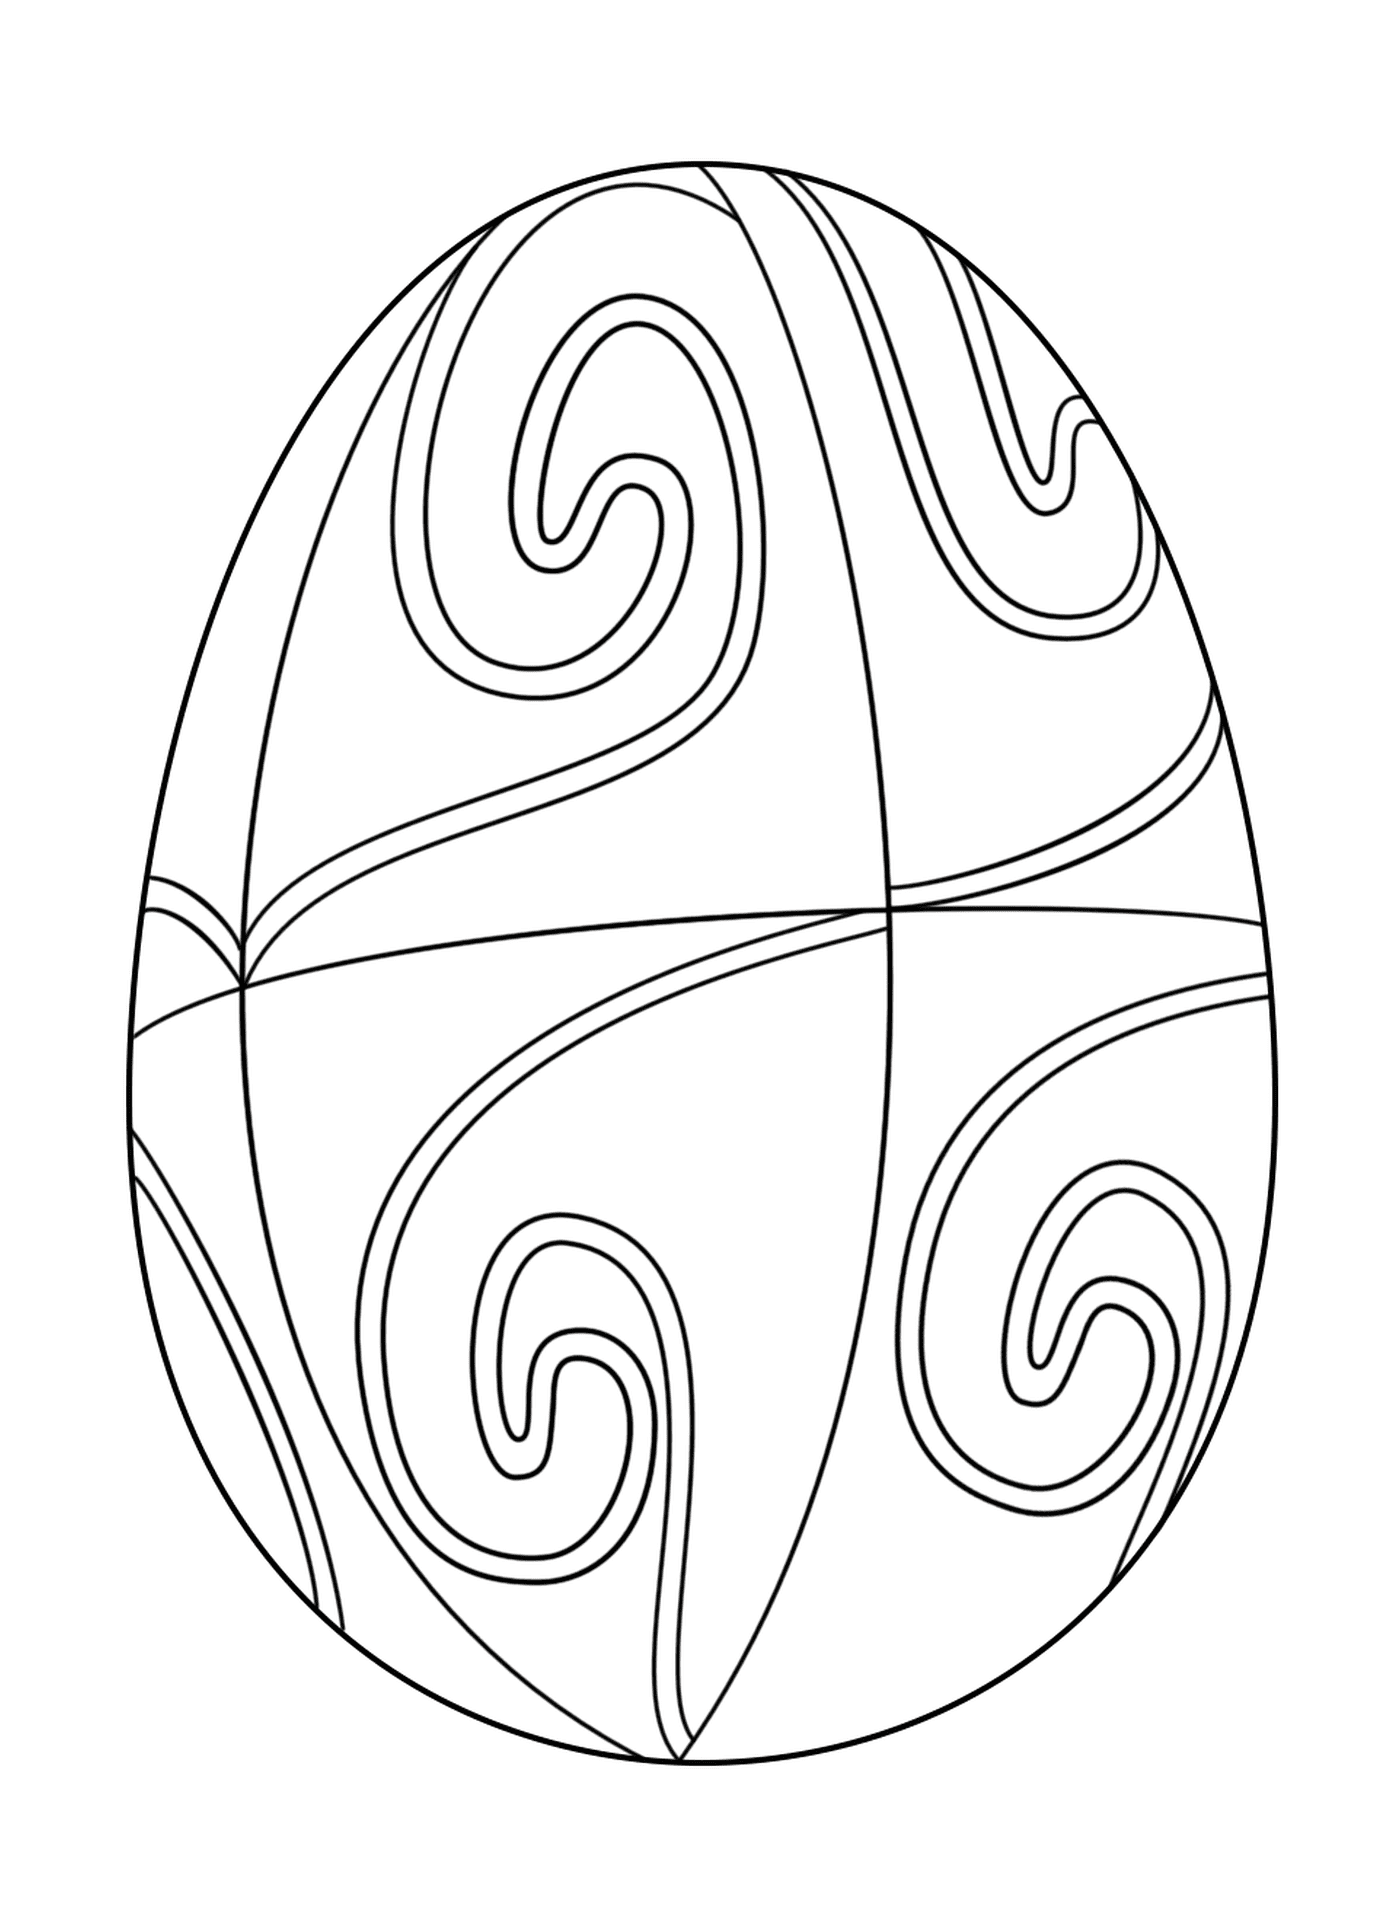   Oeuf de Pâques avecun motif en spirale 